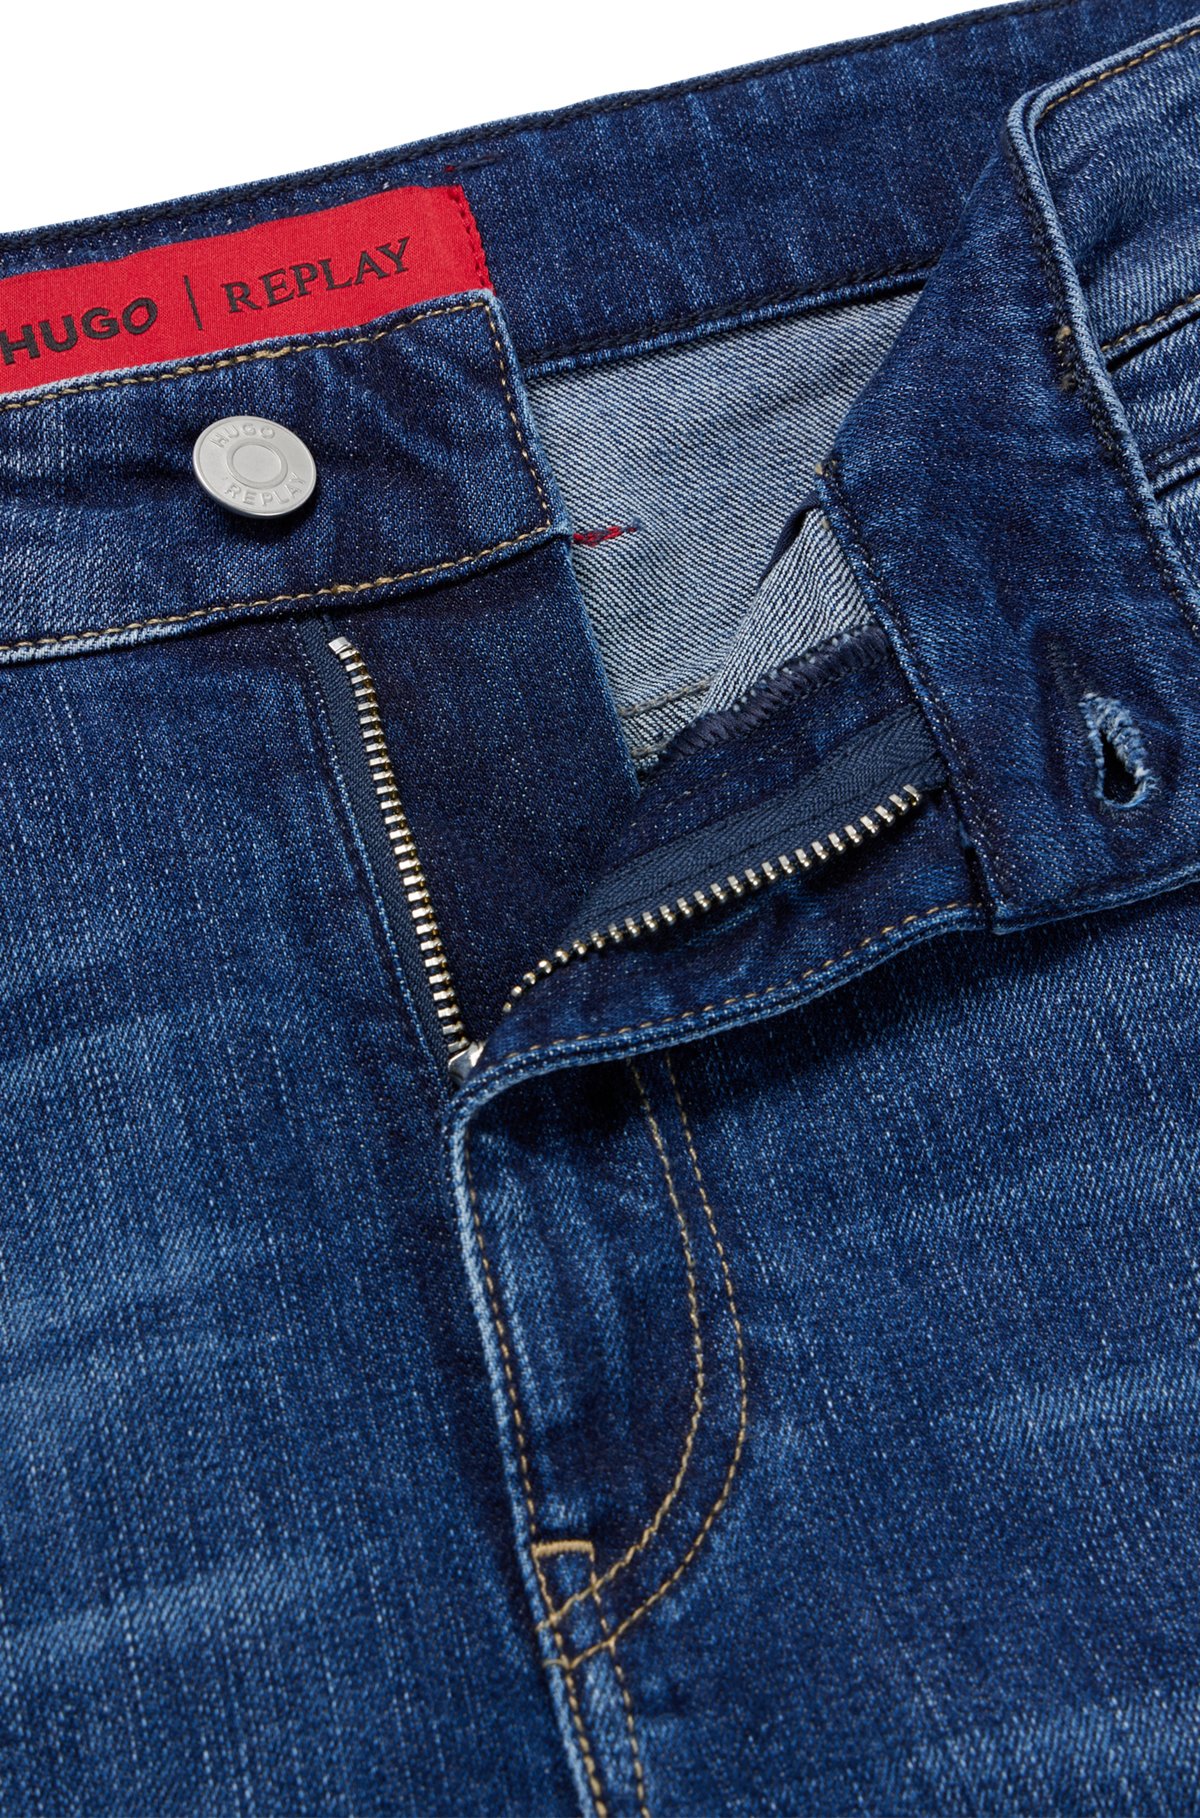 Forkæle øjenbryn Åbent HUGO - HUGO | REPLAY regular-fit jeans in dark-blue stretch denim